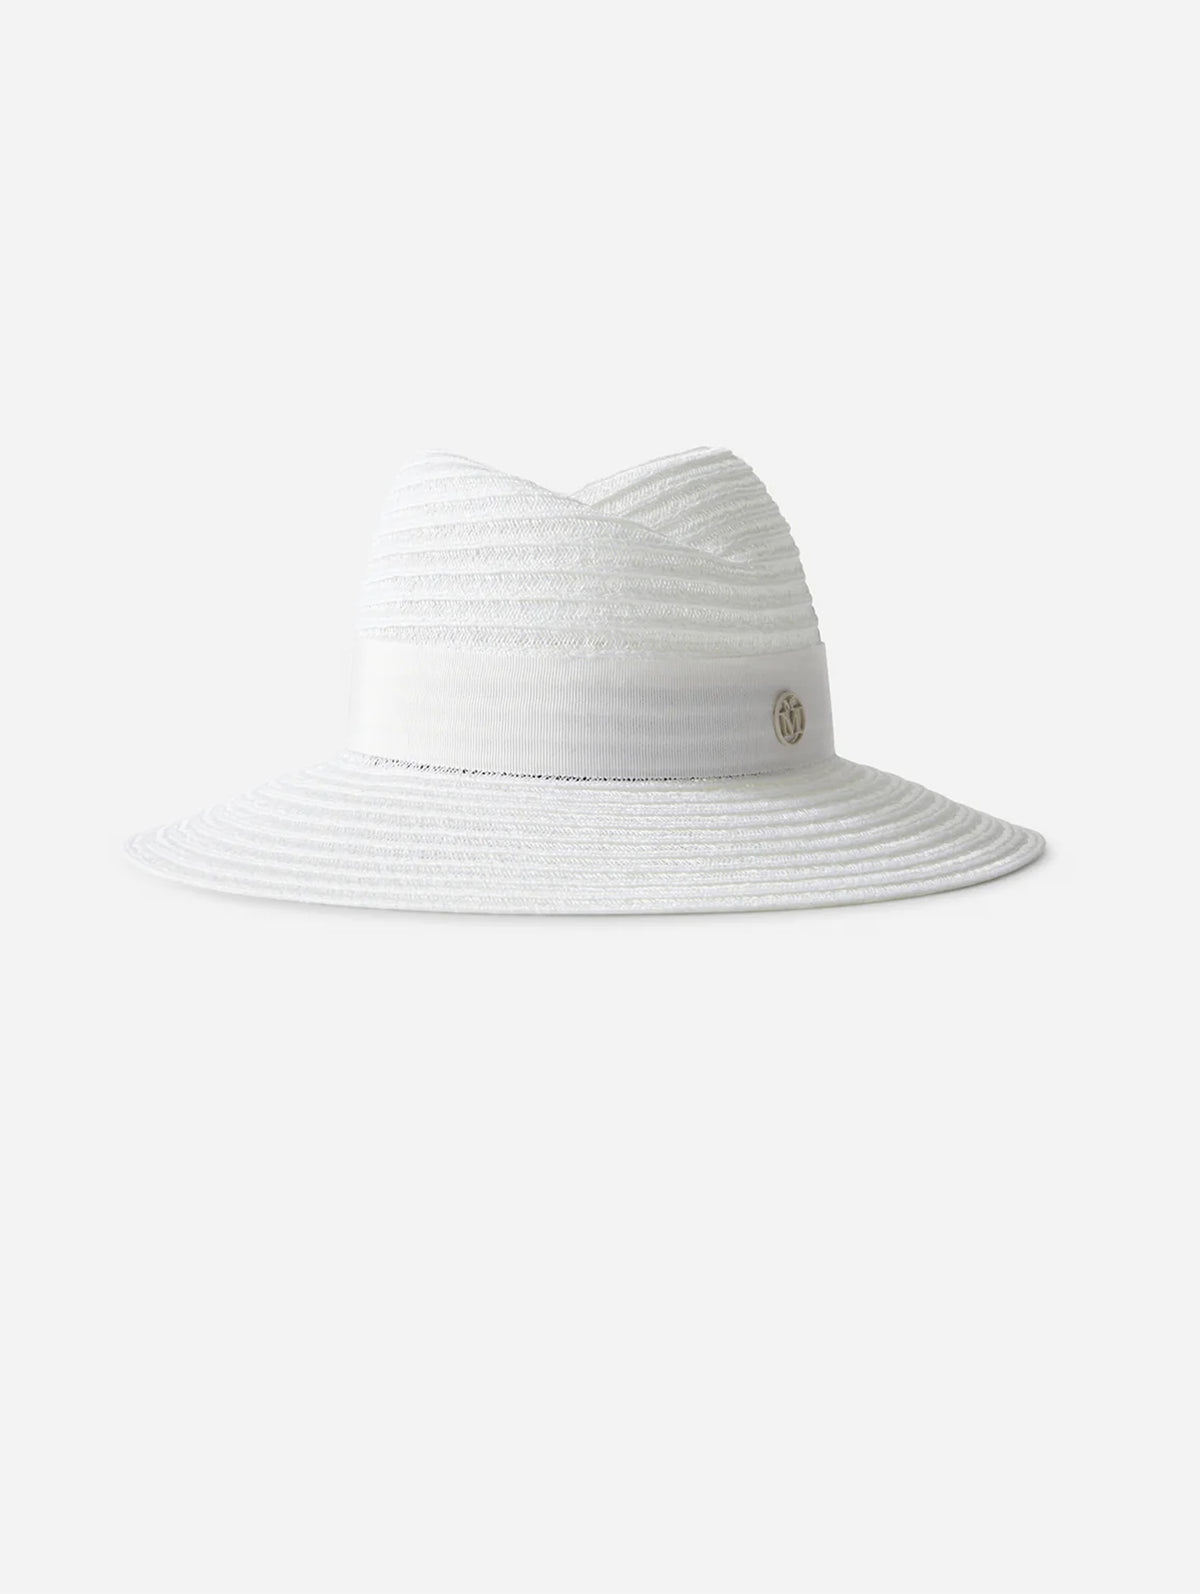 Virginie Straw Fedora Hat